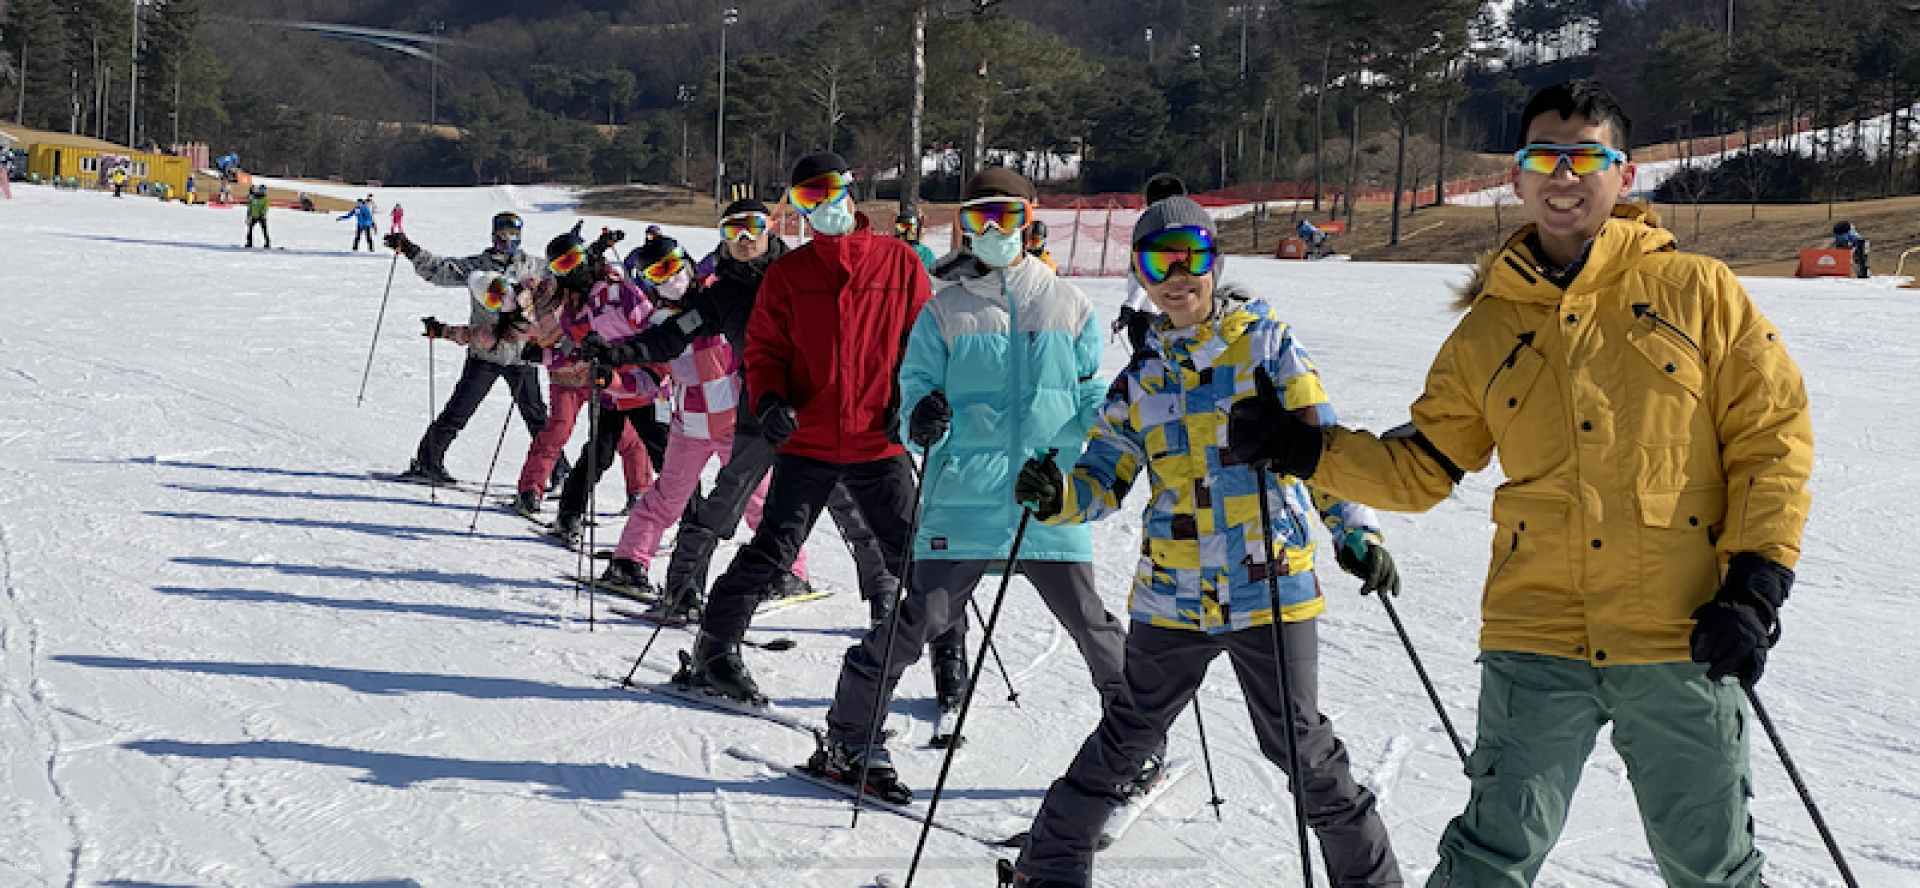 韓國-江原道橡樹谷(Oak Valley)滑雪場一日遊| 首爾出發